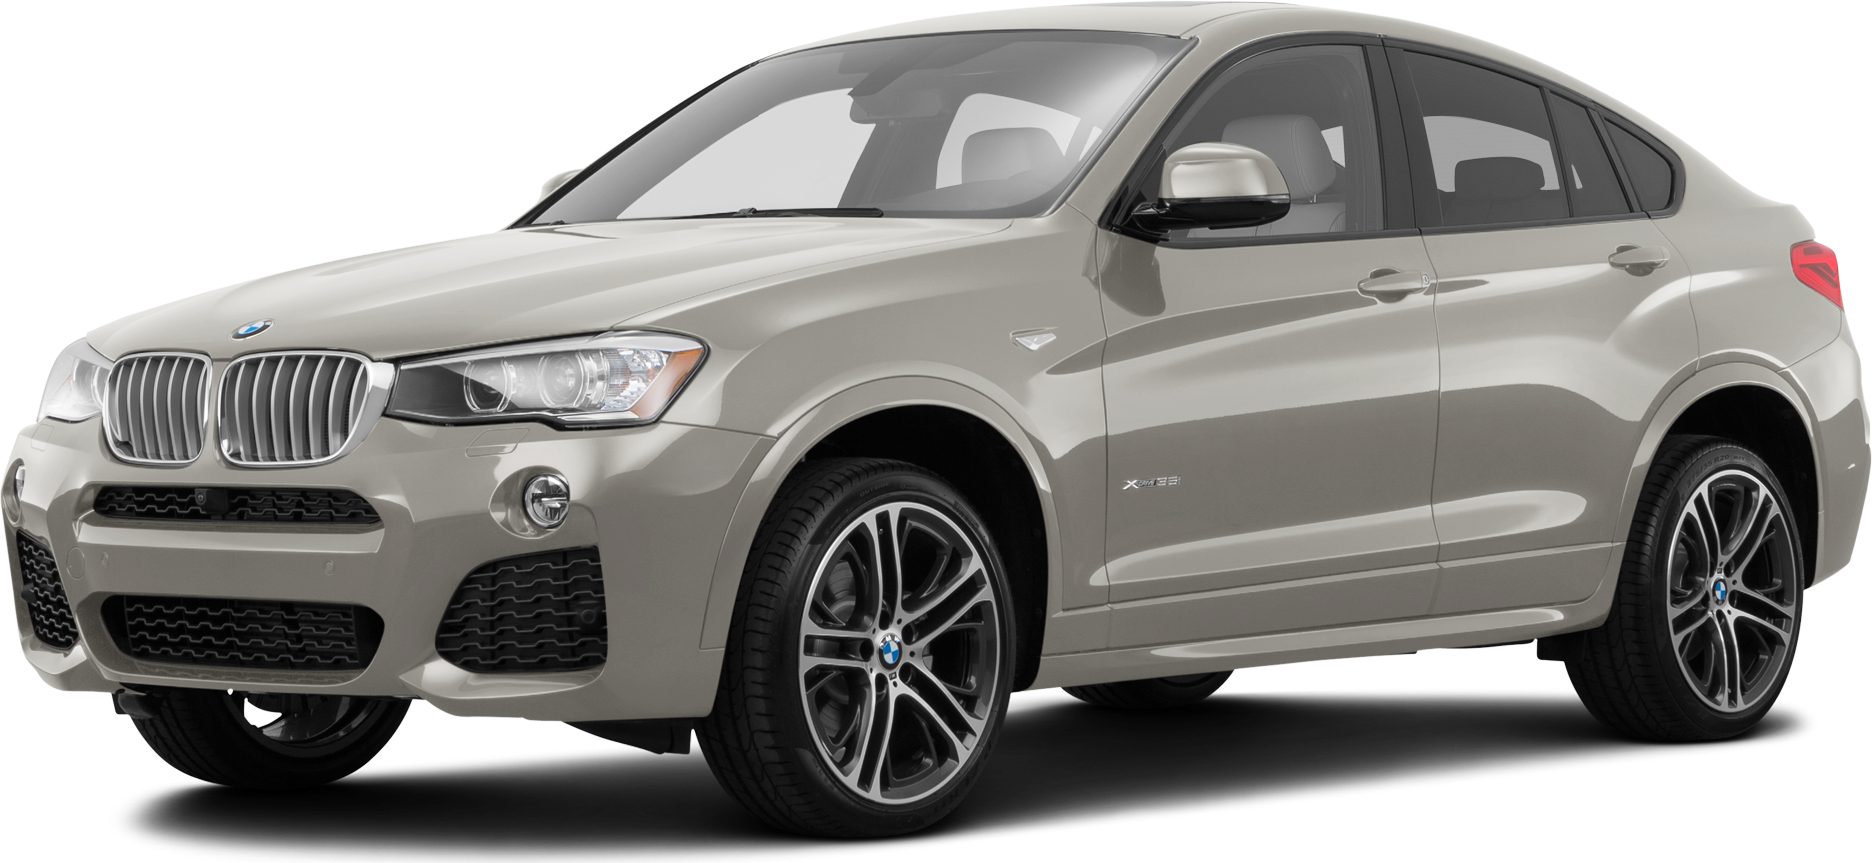 Bán xe ô tô BMW X4 đời 2016 giá rẻ chính hãng